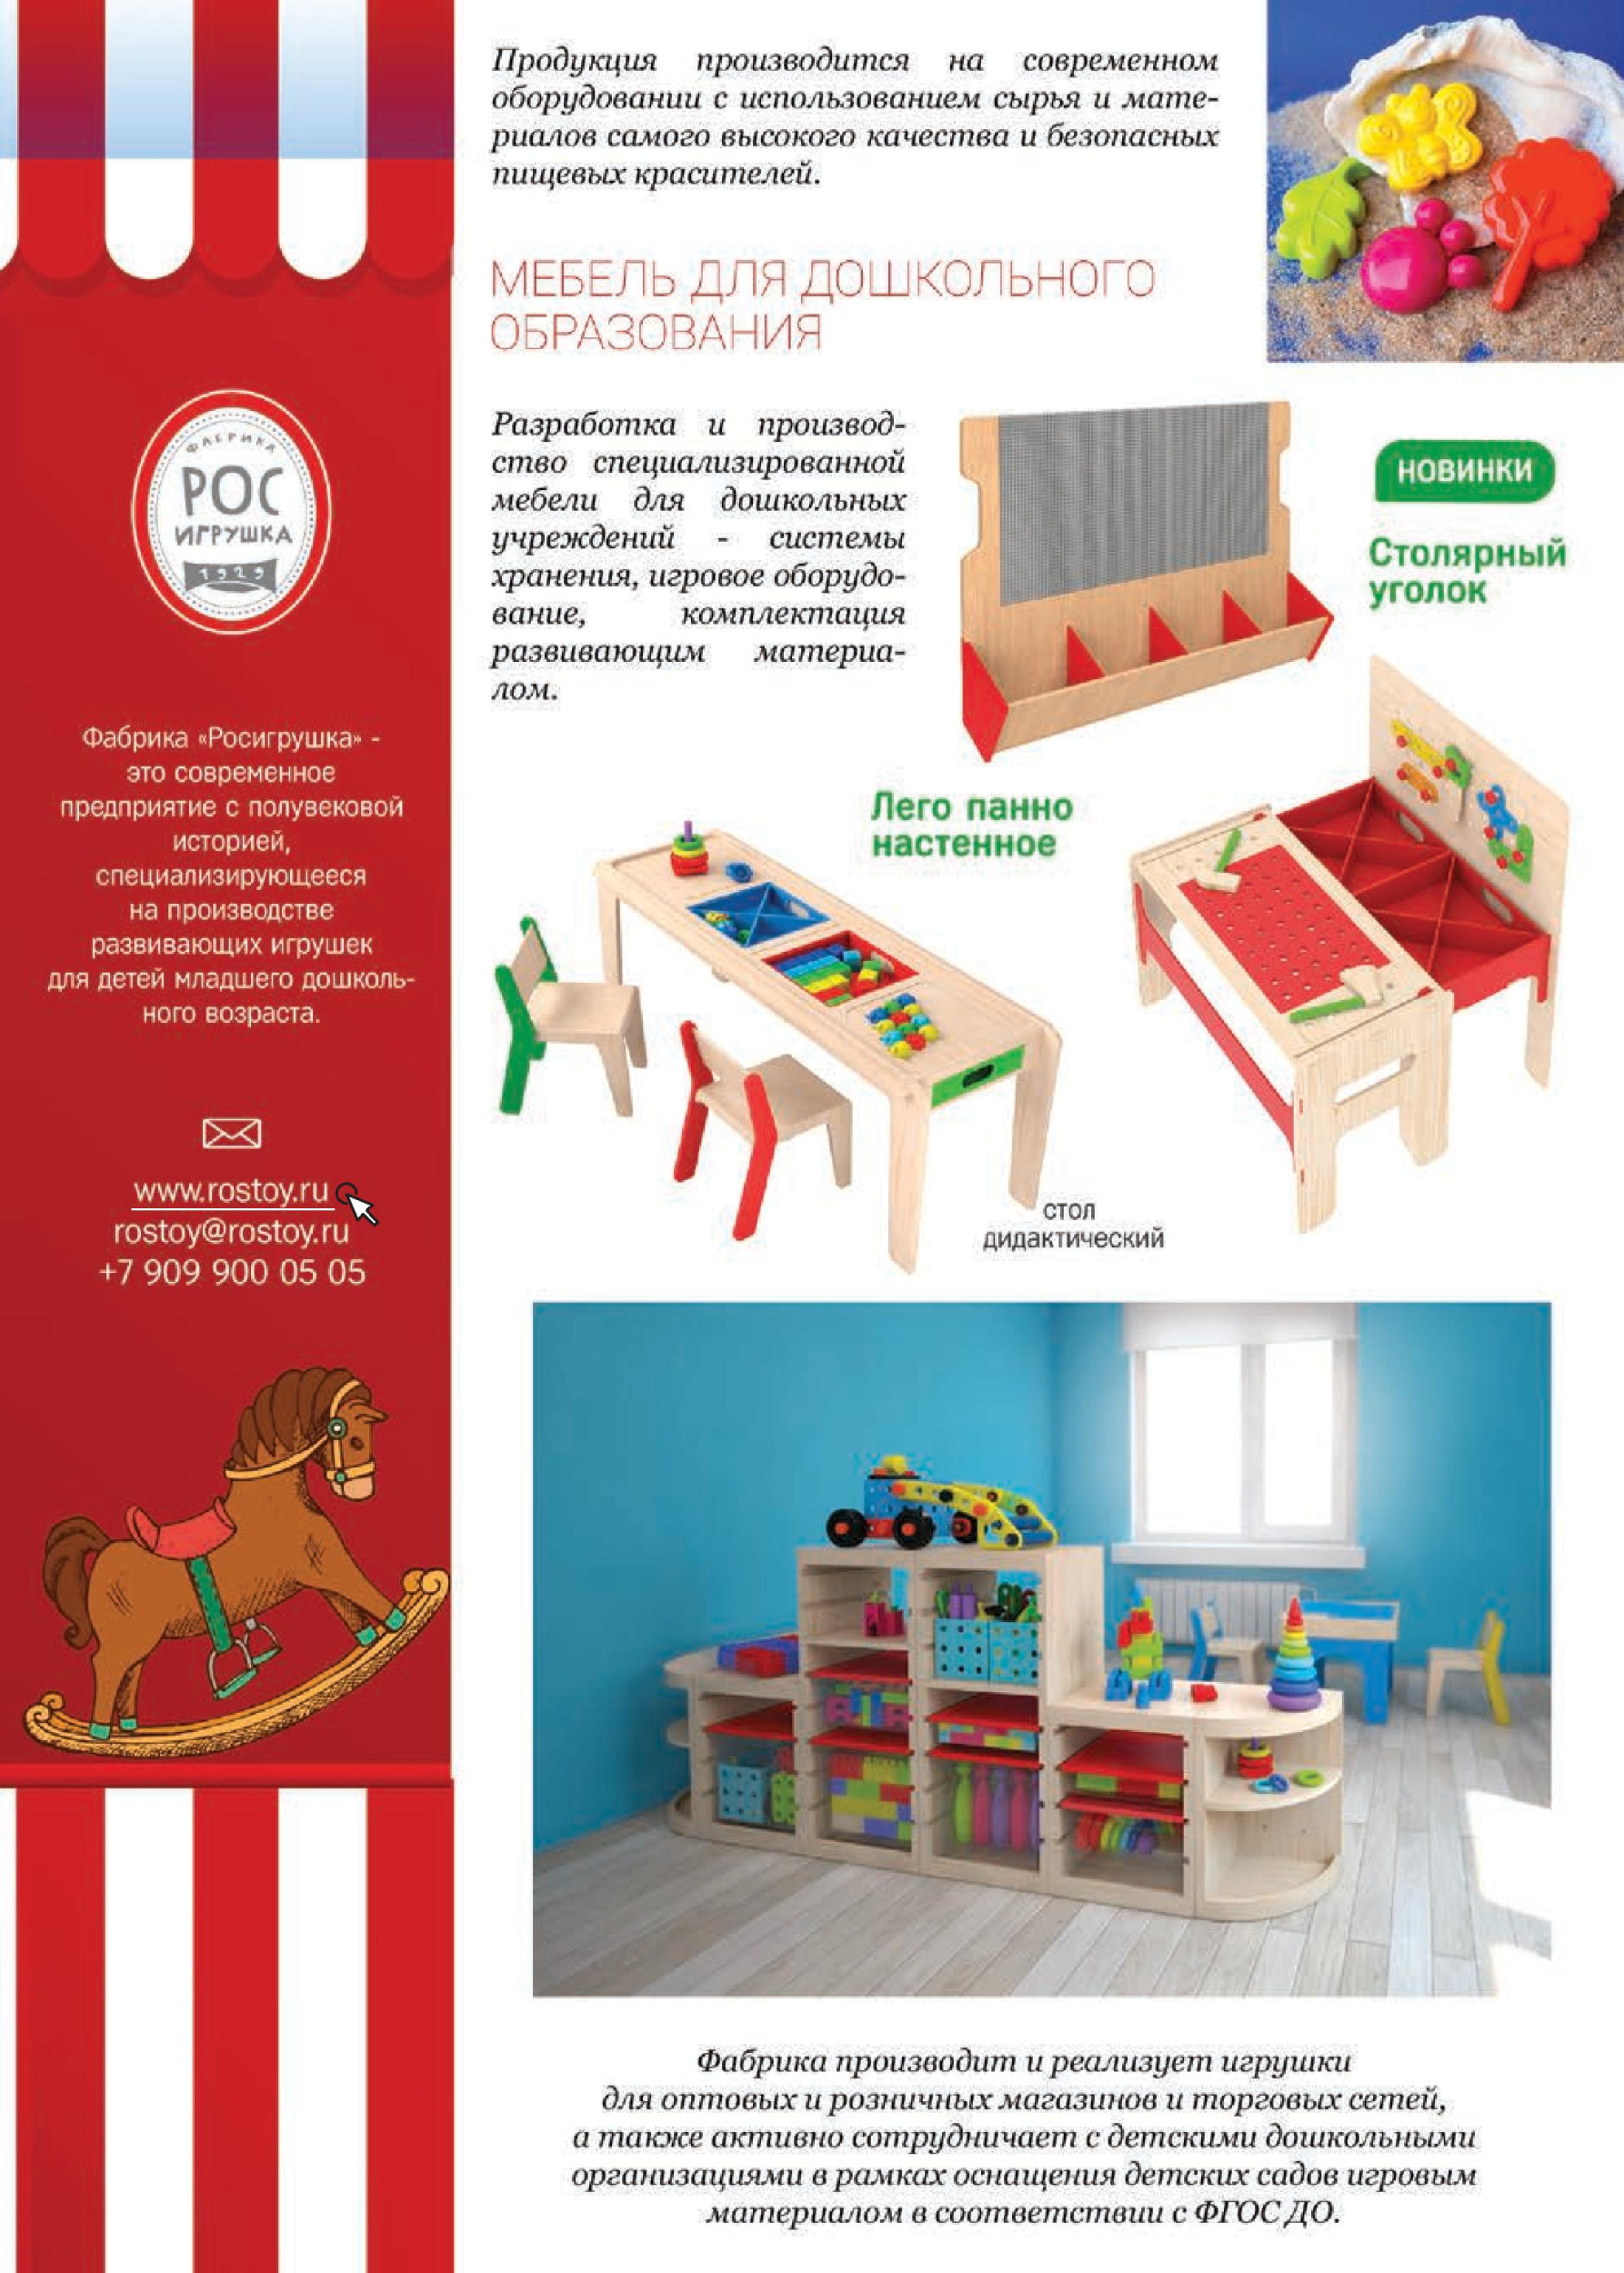 Мебель для дошкольного образования